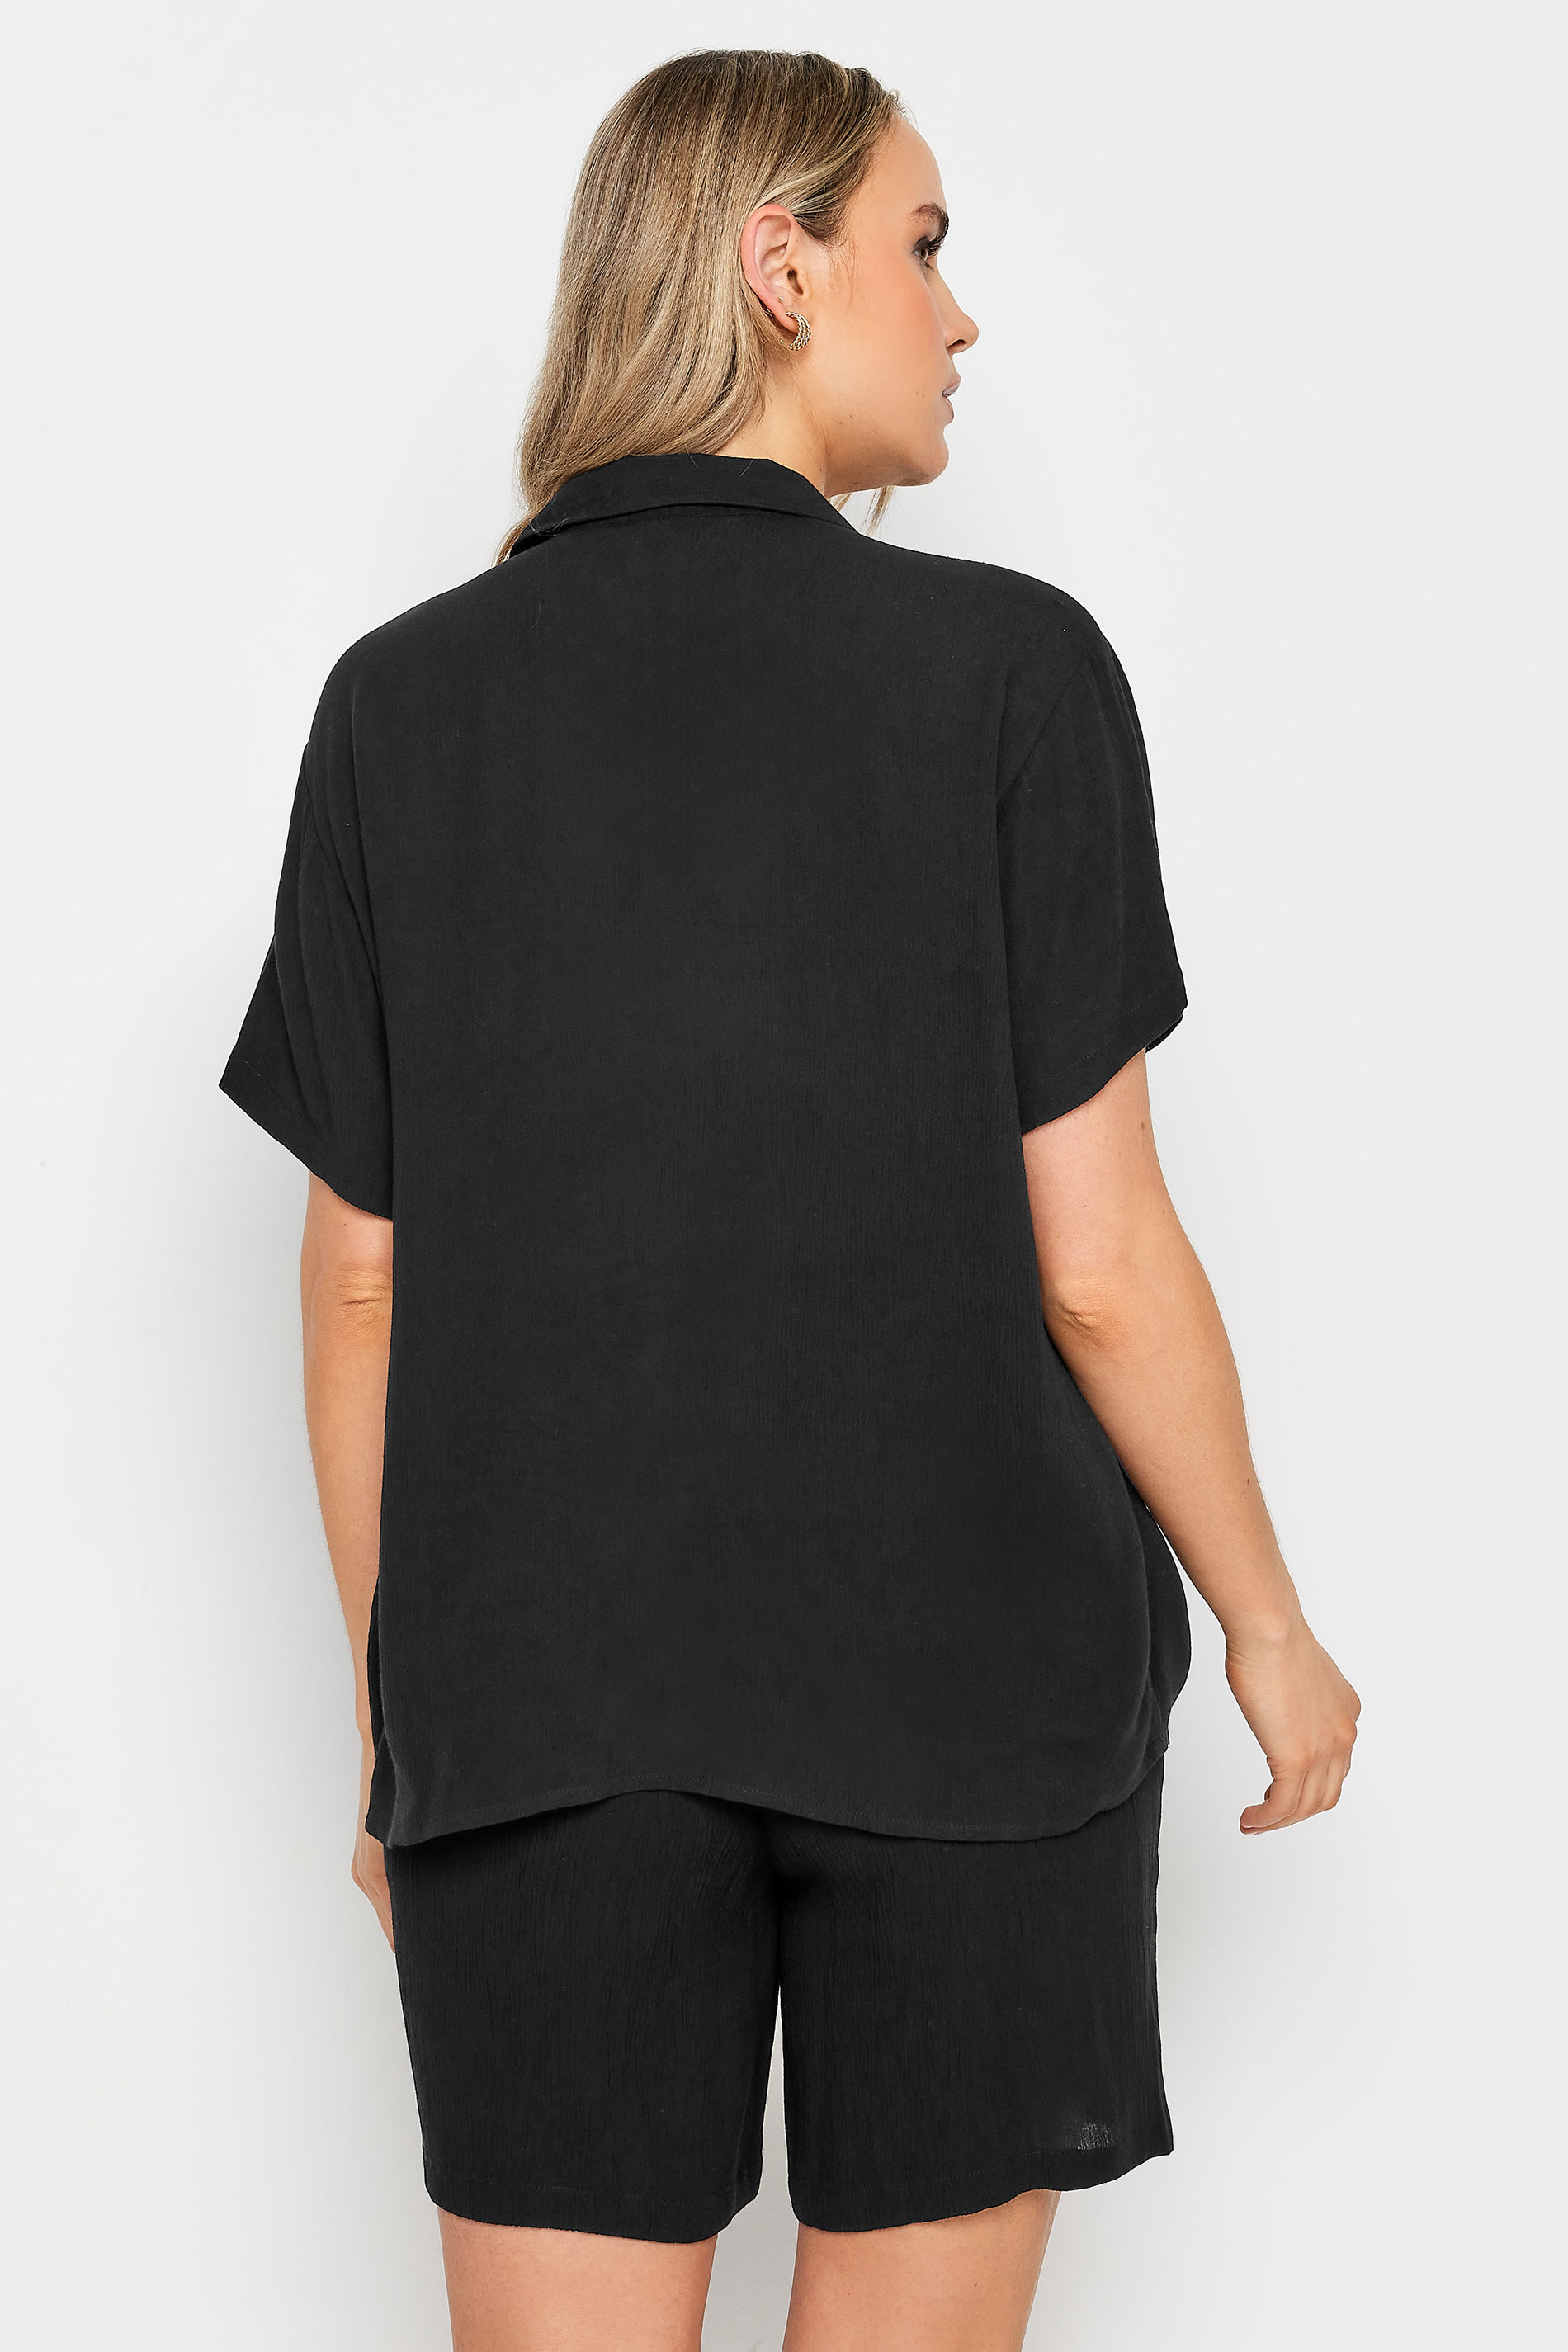 LTS Tall Womens Black Textured Shirt | Long Tall Sallly 3